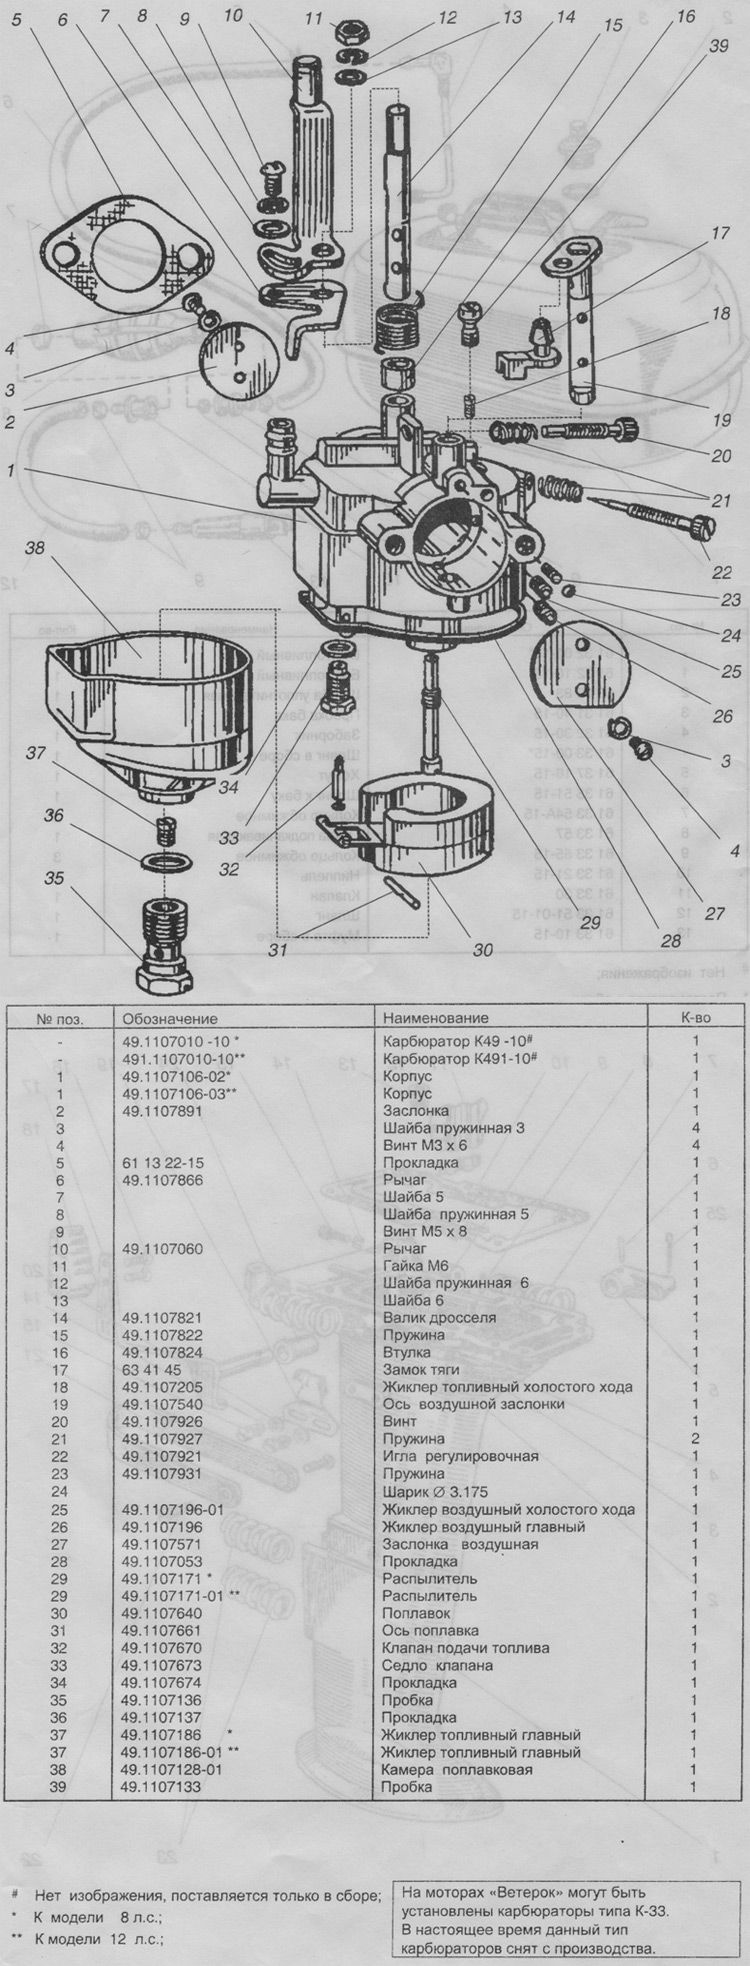 Советский лодочный мотор ветерок 8: характеристики и отзывы